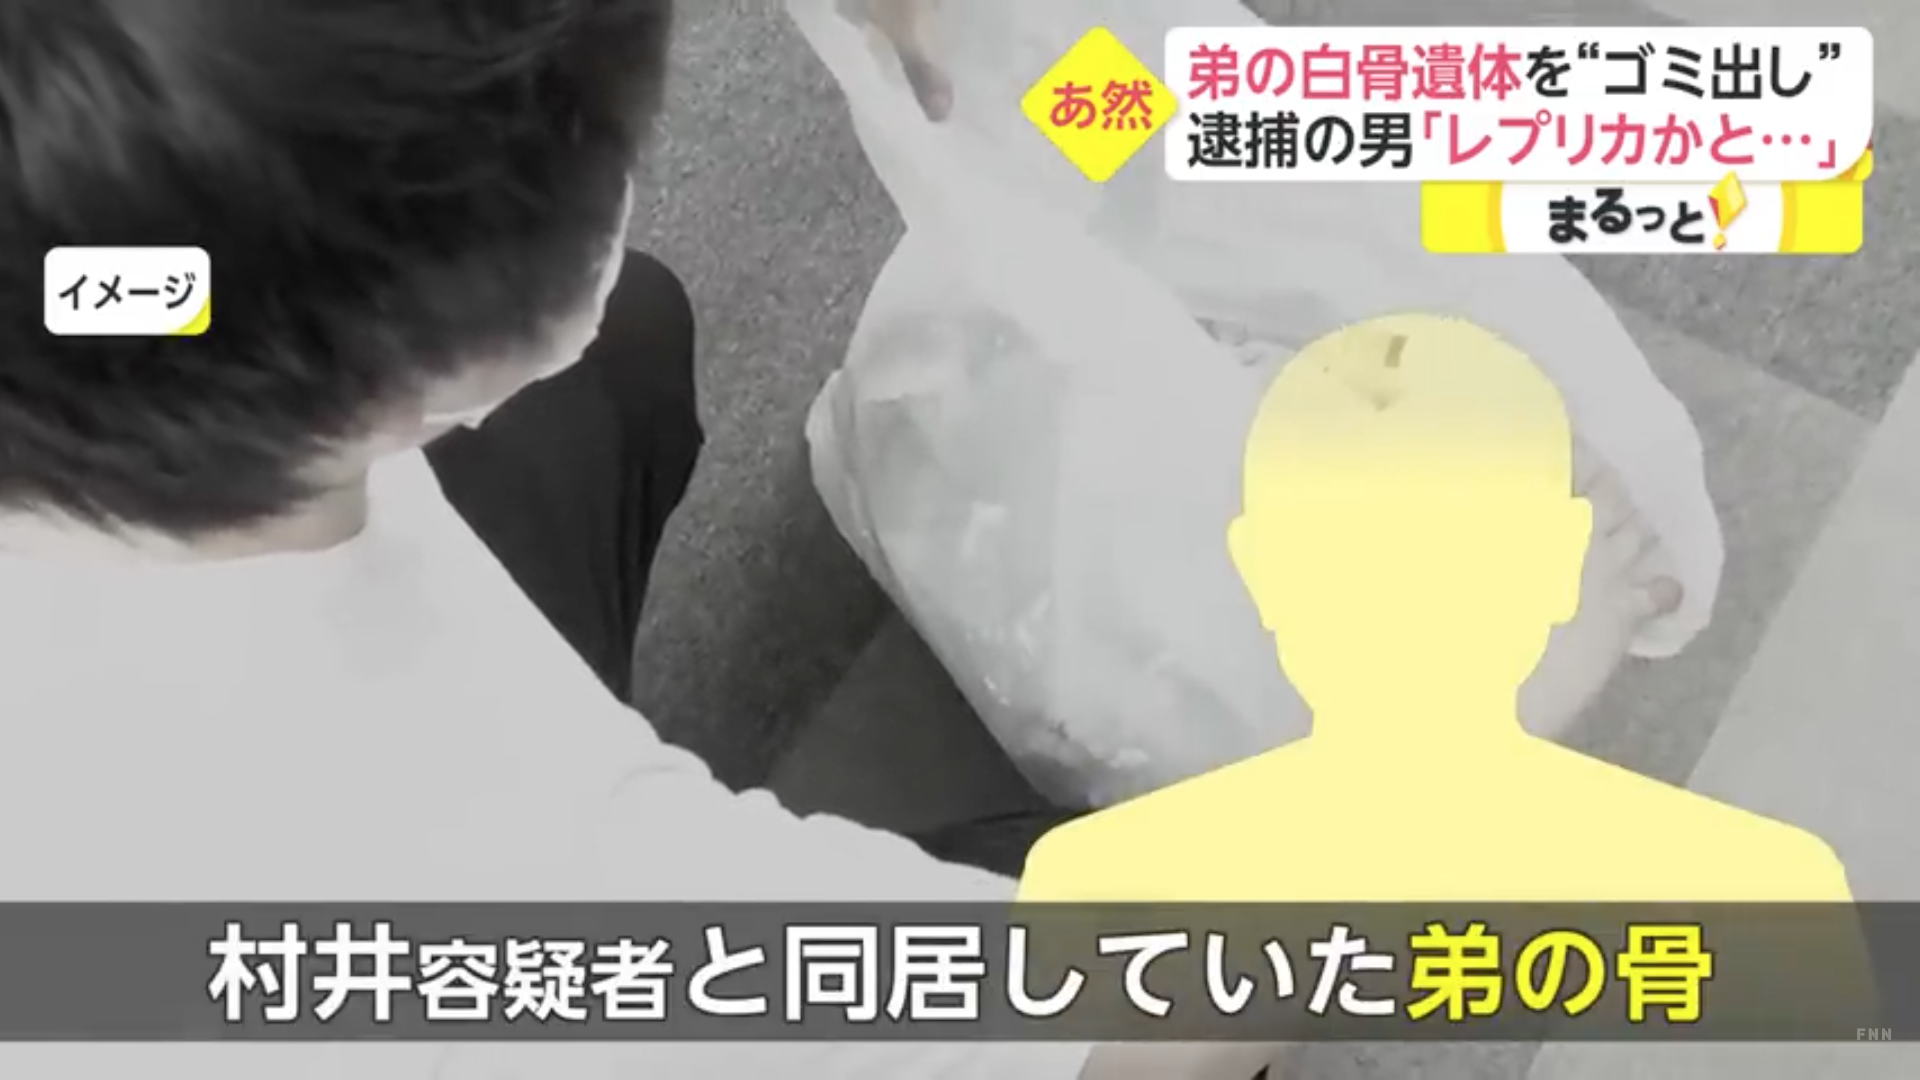 Nhật Bản: Vứt hộp sọ em trai ra bãi rác tái chế - Ảnh 2.